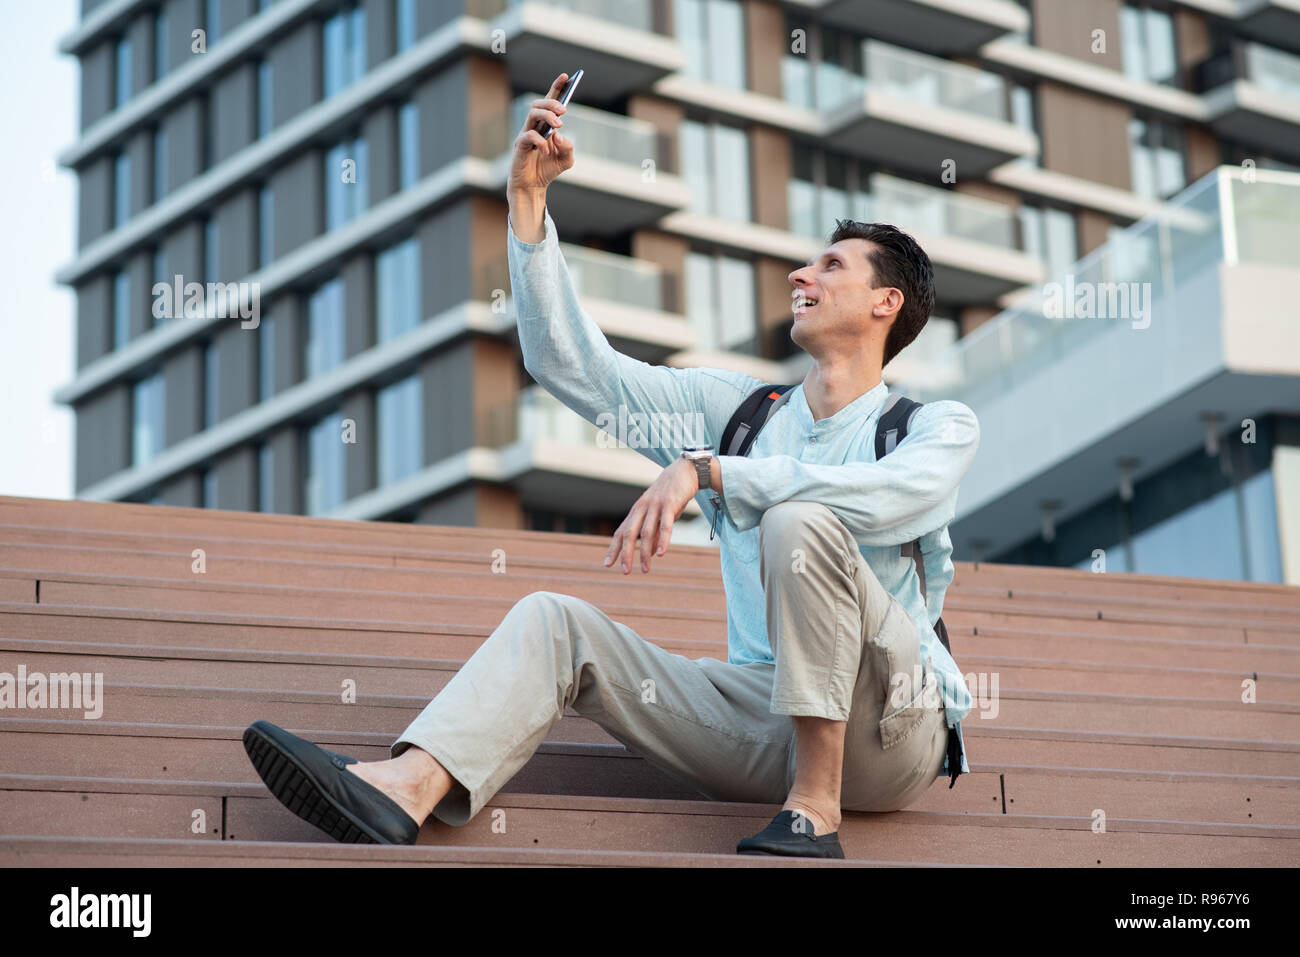 Schöner Mann unter selfie mit seinem Handy vor modernes Gebäude Stockfoto